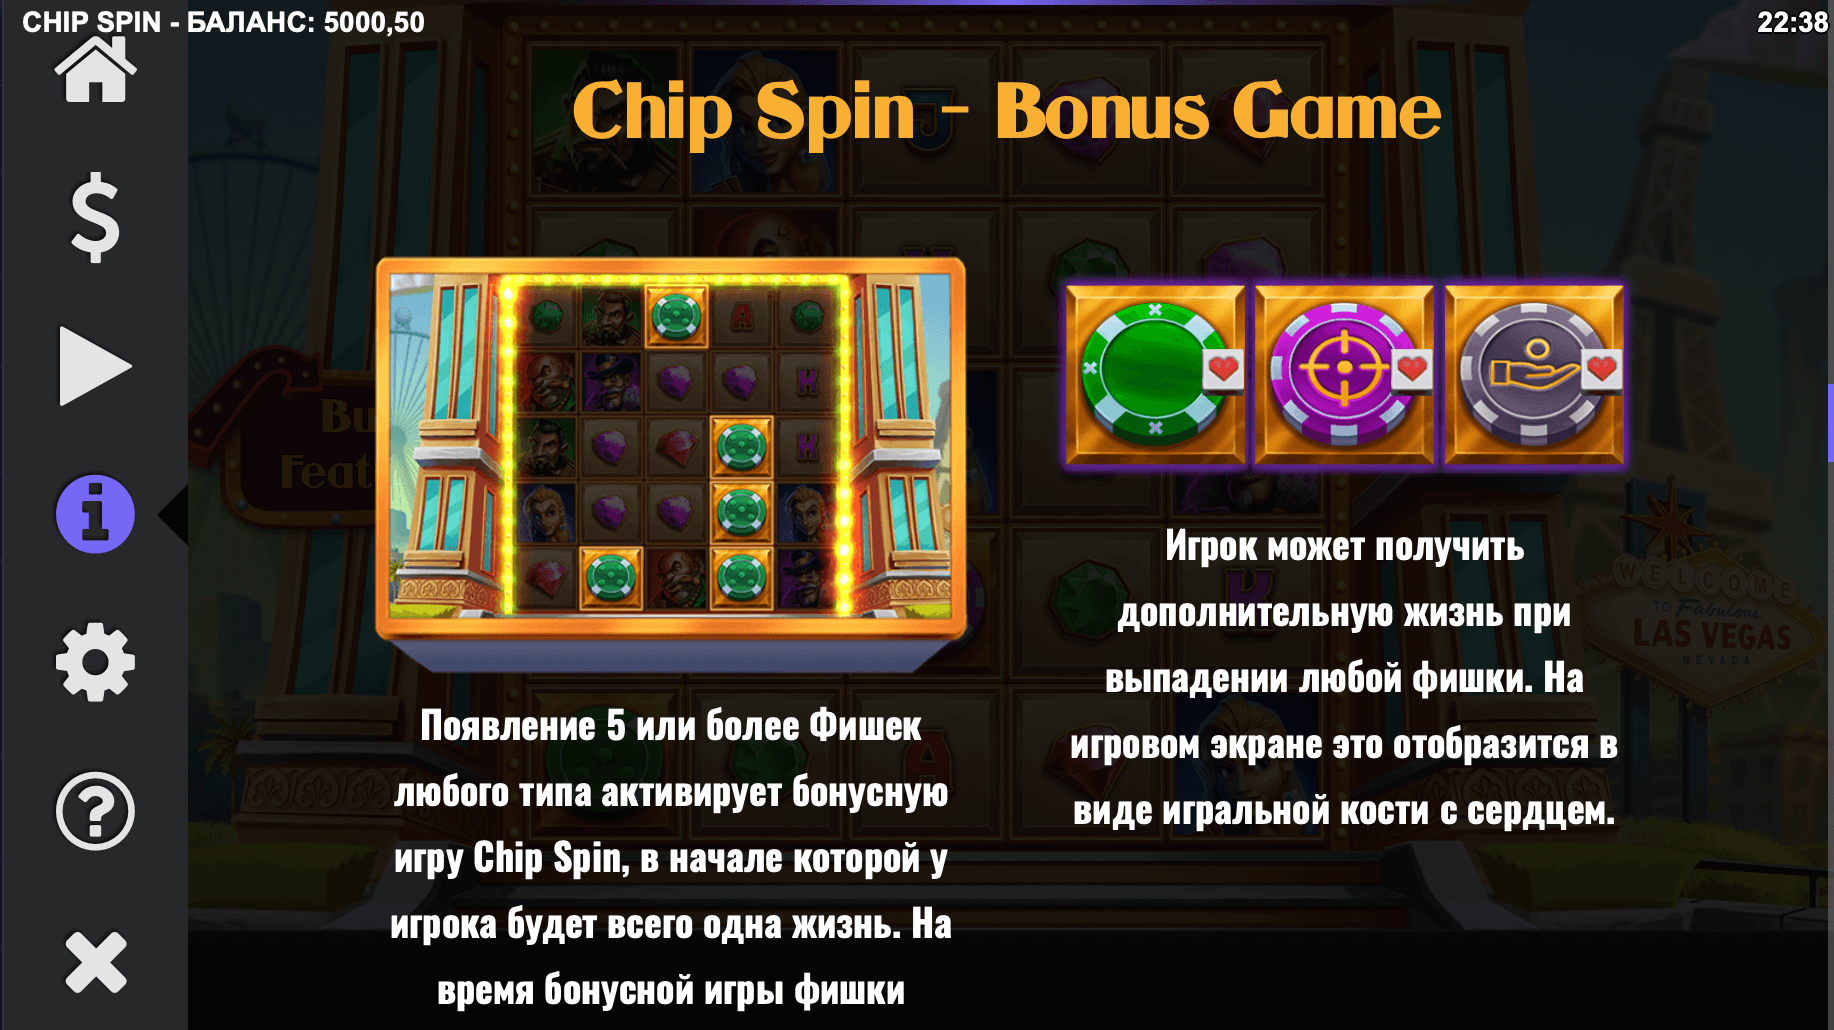 Chip-Spin-Minispiel